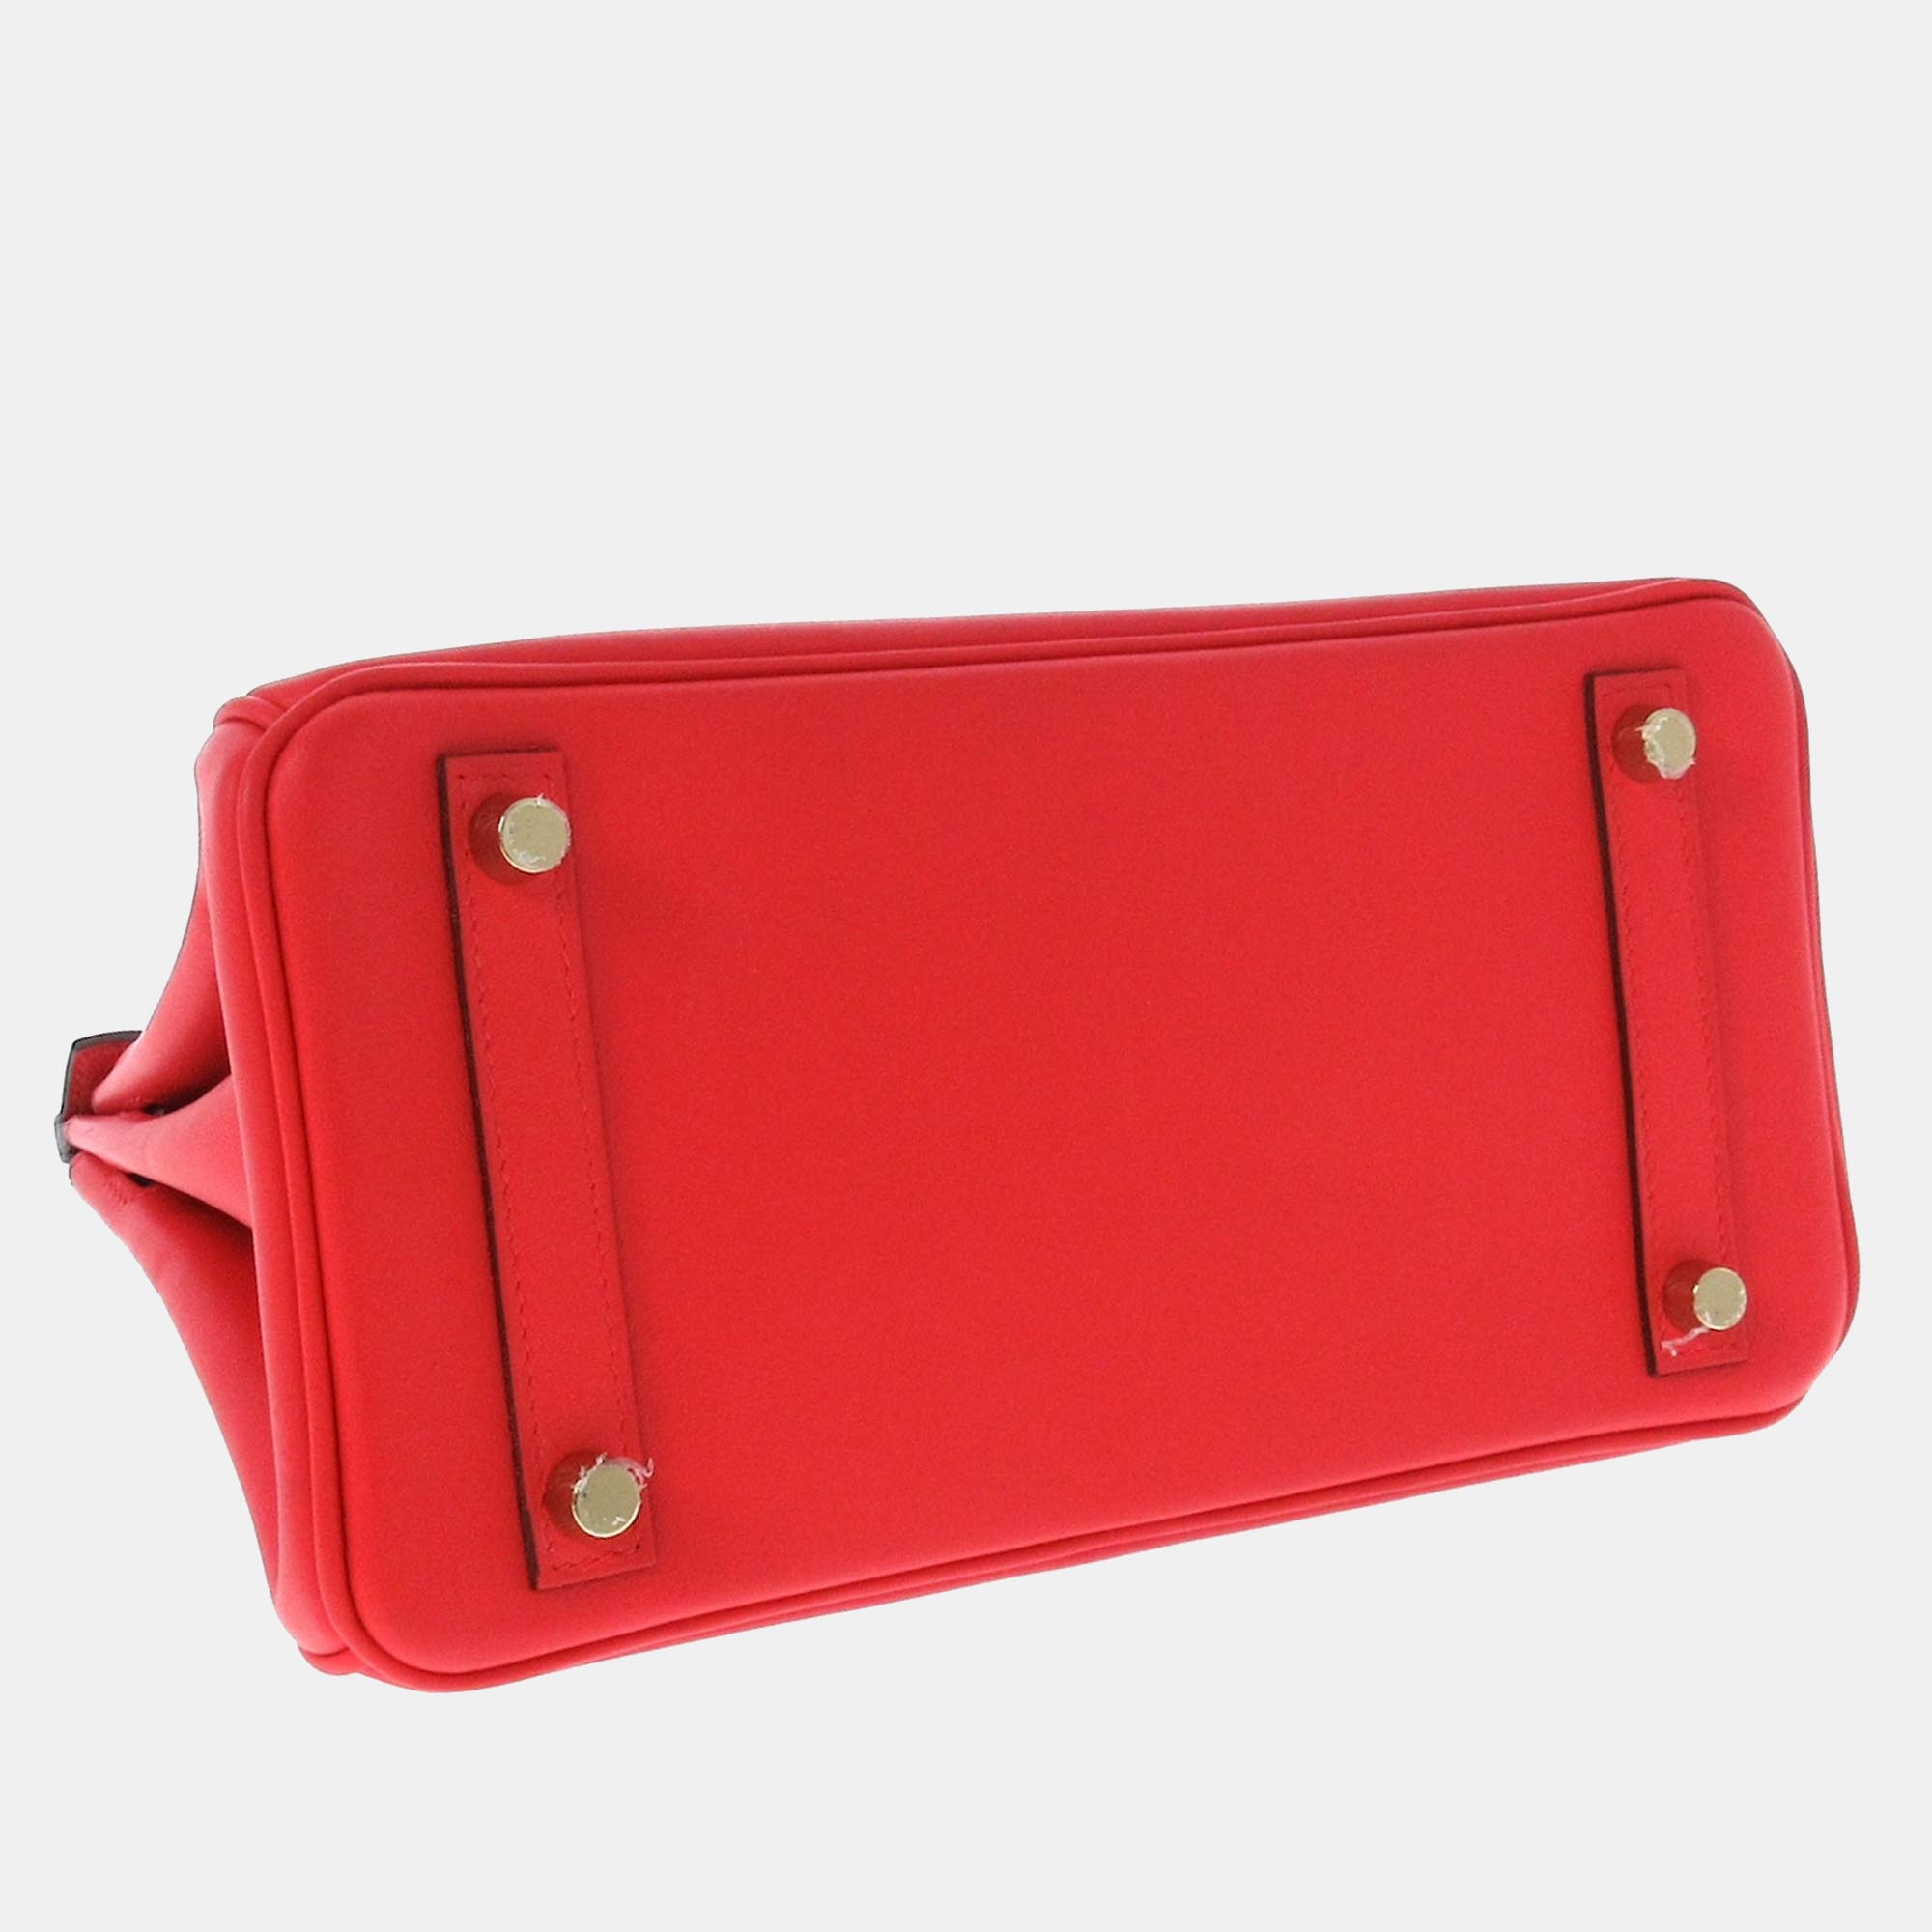 Hermes Red Leather Gold Hardware Birkin 25 Bag